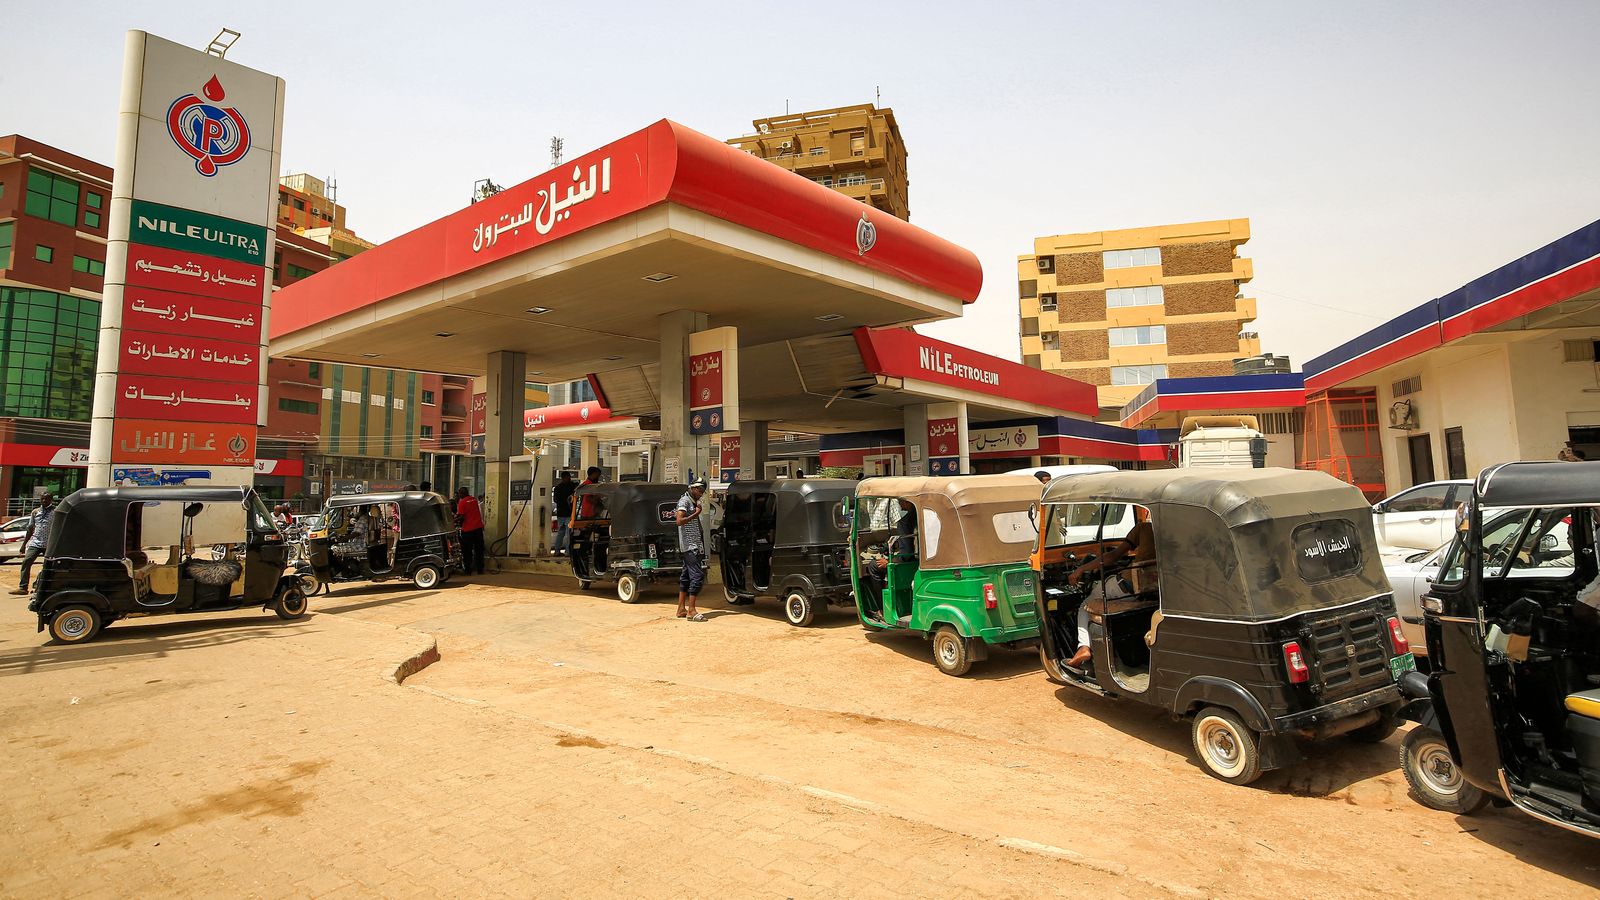 مركبات تنتظر في إحدى محطات التزود بالوقود في العاصمة السودانية الخرطوم - 10 يونيو 2021 - AFP